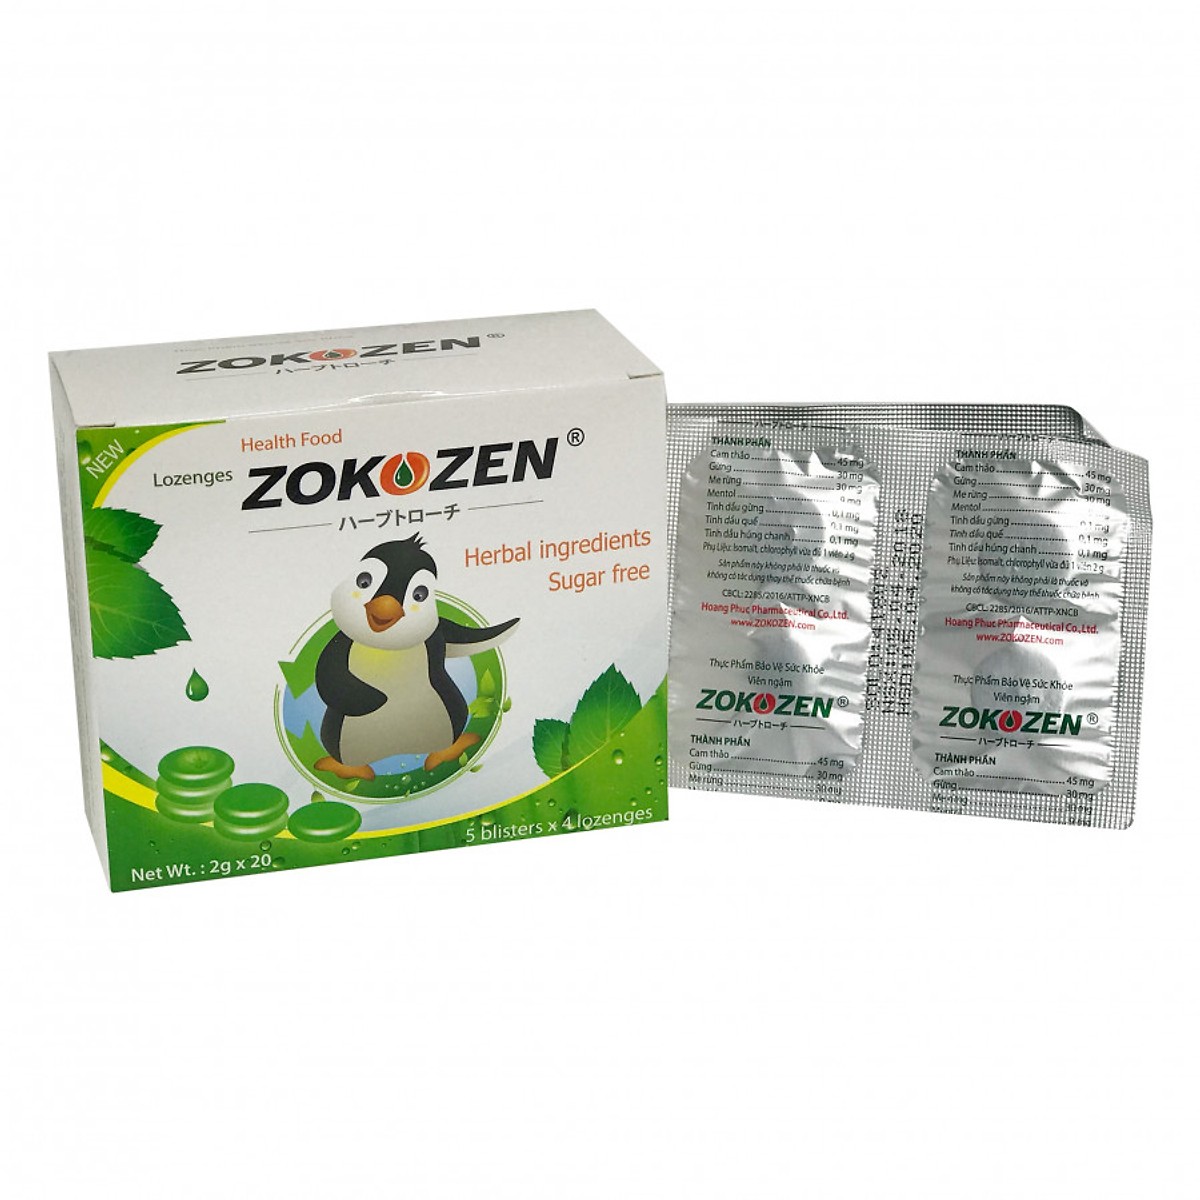 Combo 3 hộp Thực phẩm bảo vệ sức khỏe giảm ho Viên Ngậm Zokozen (Hộp 5 Vỉ/4 Viên)